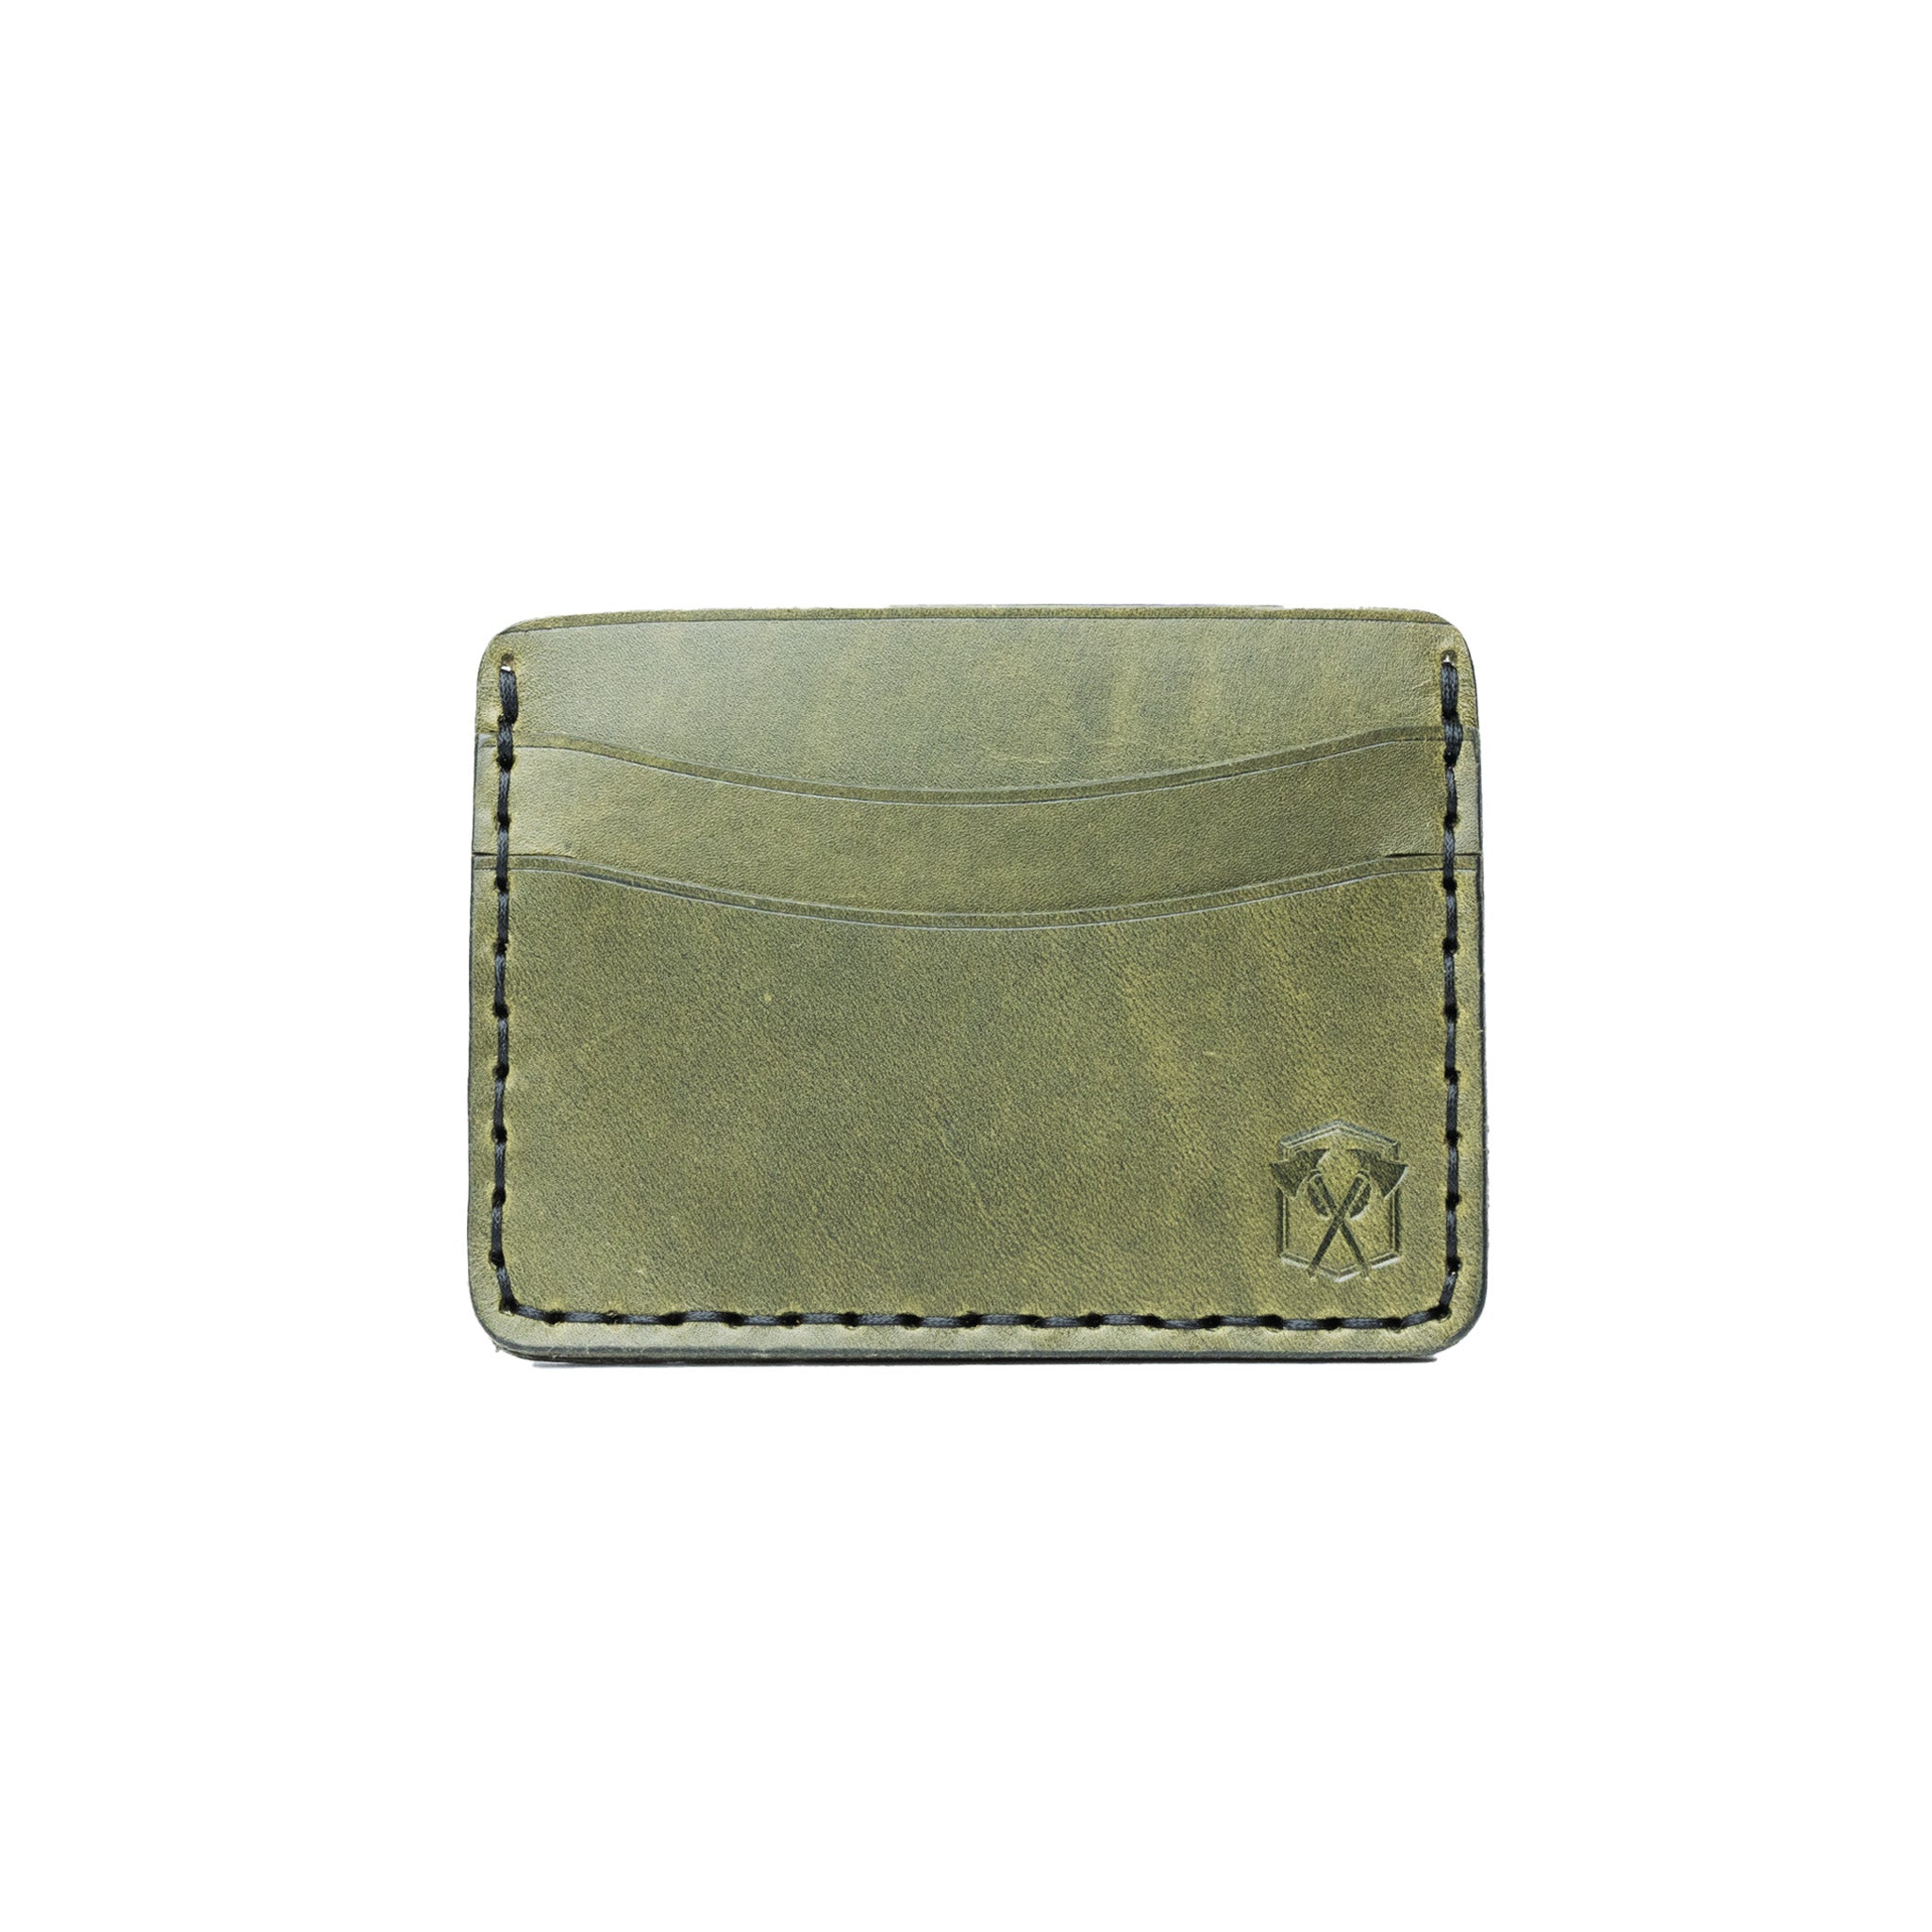 5 Pocket Leather Wallet